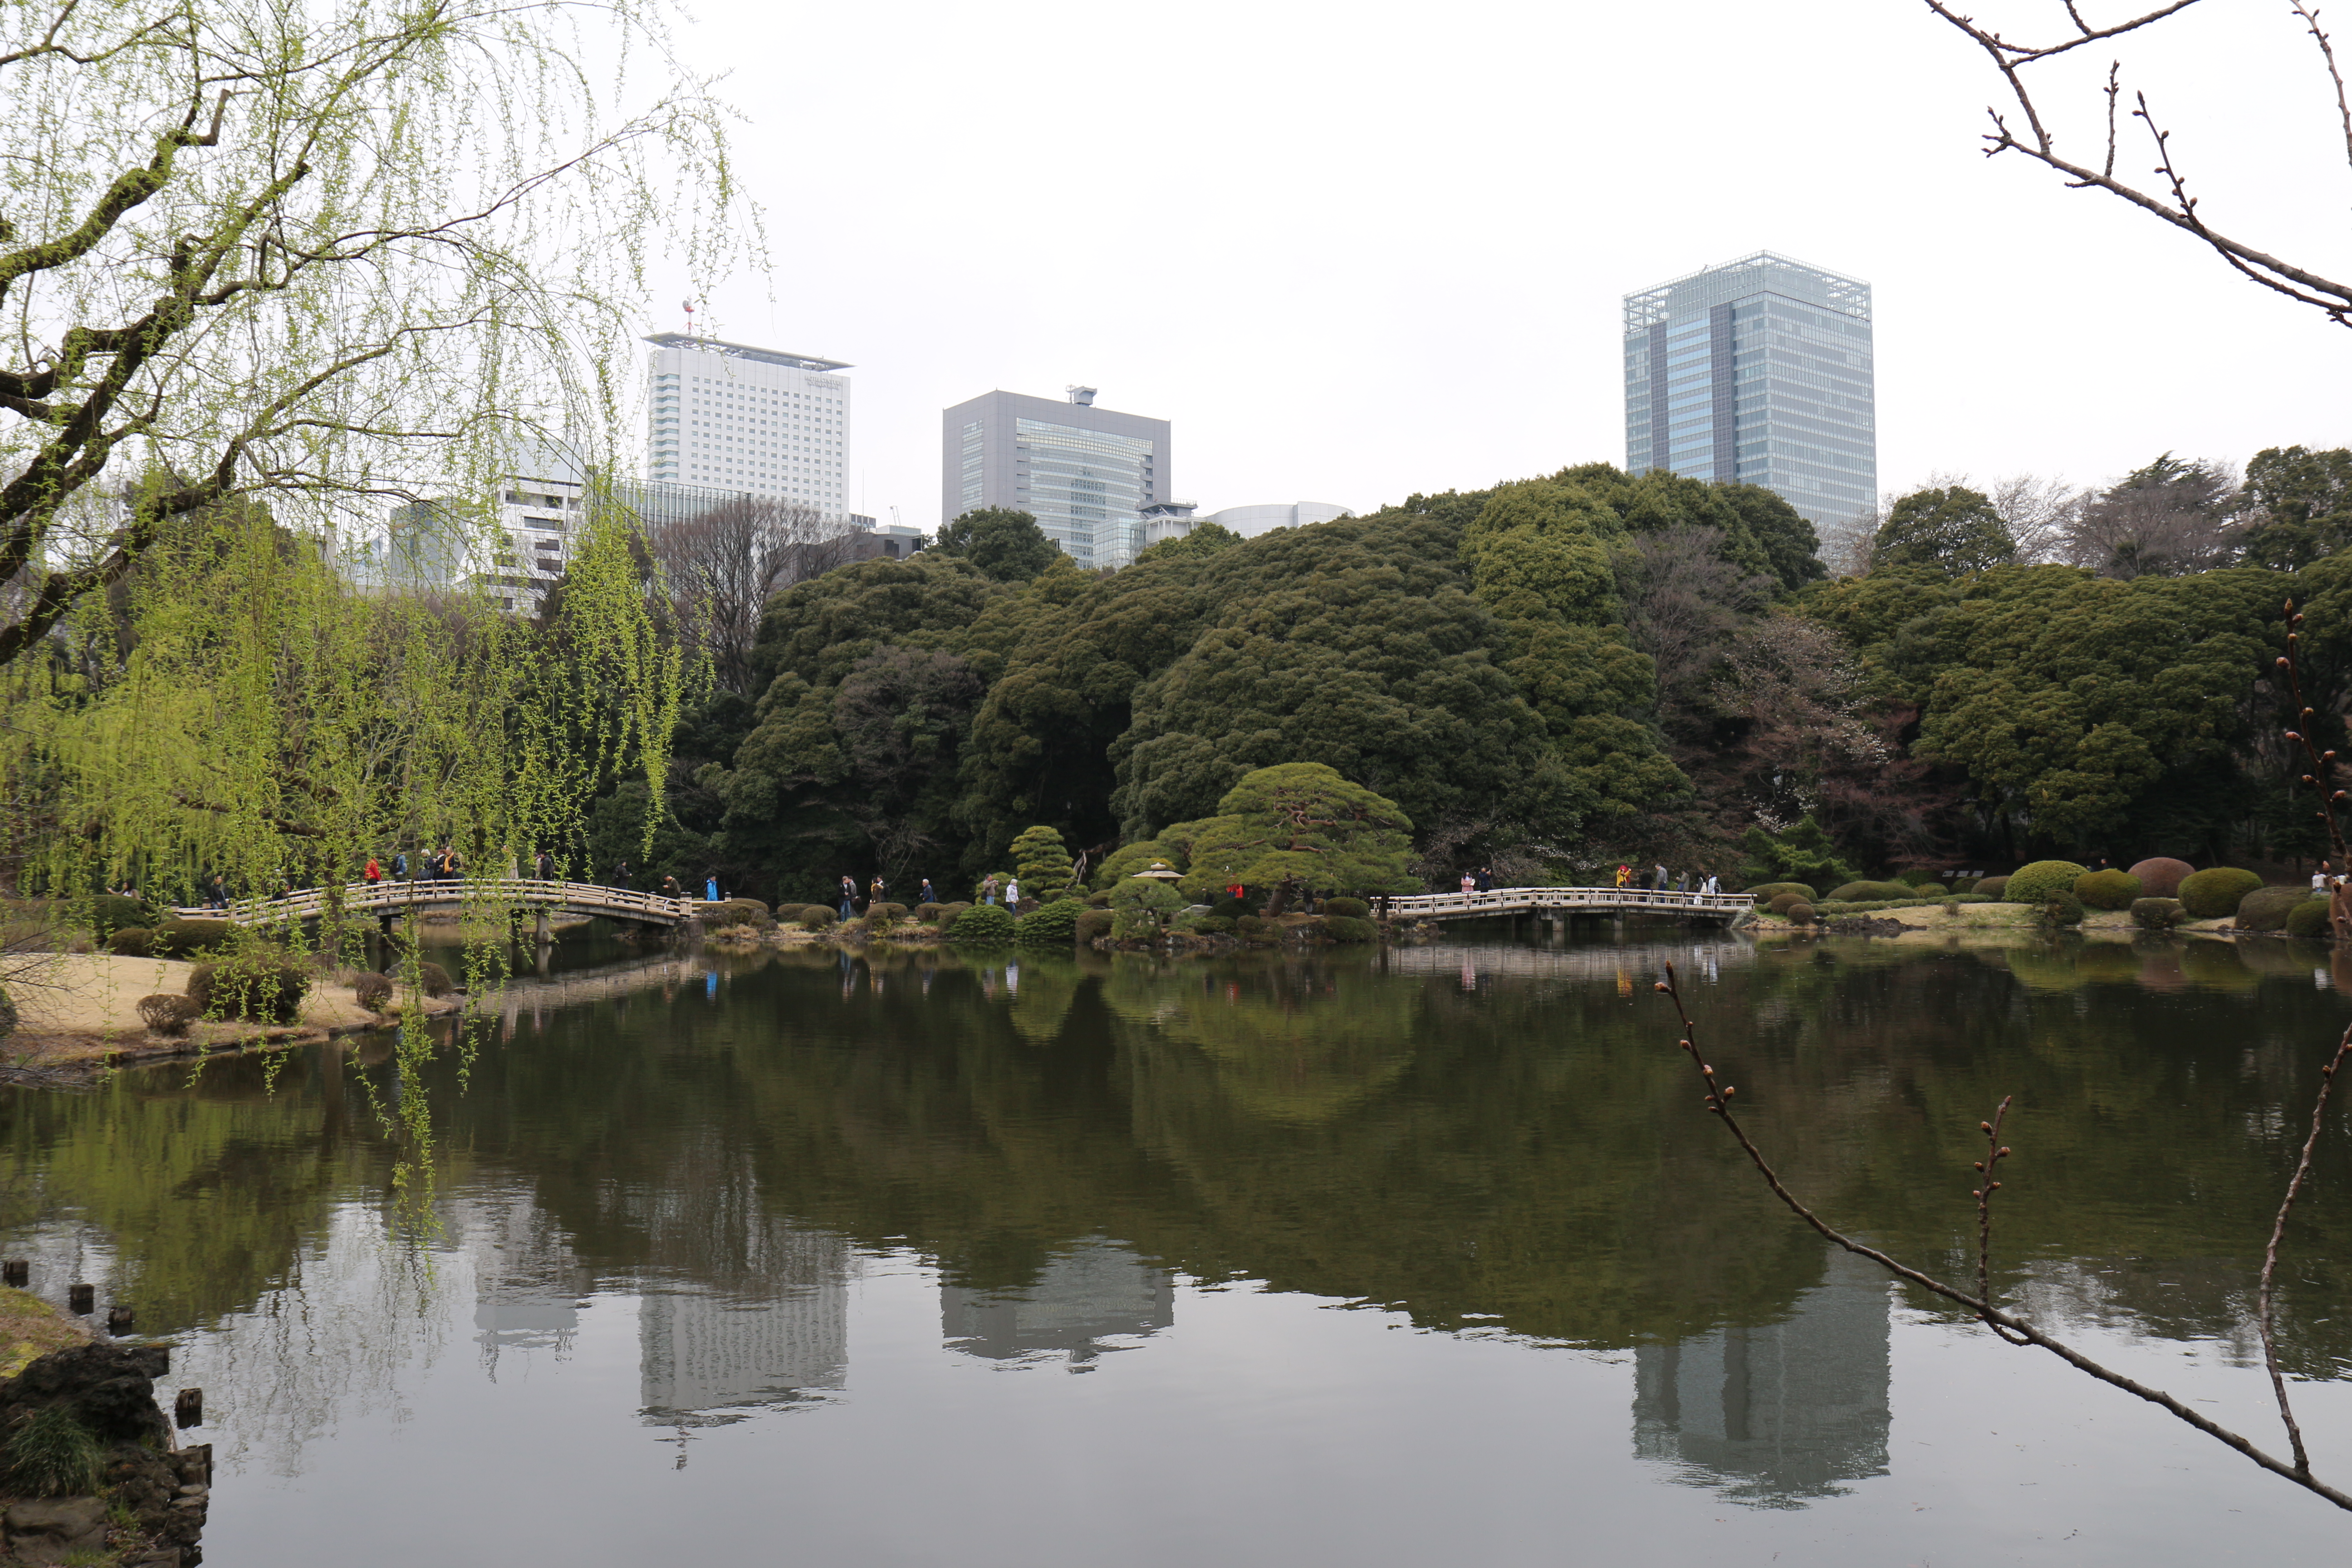 Photo du plan d'eau du parc de Shinjuku. Au premier plan le plan d'eau, puis le pont et la berge peuplée de végétation. A l'arrière plan, les buildings de Tokyo.